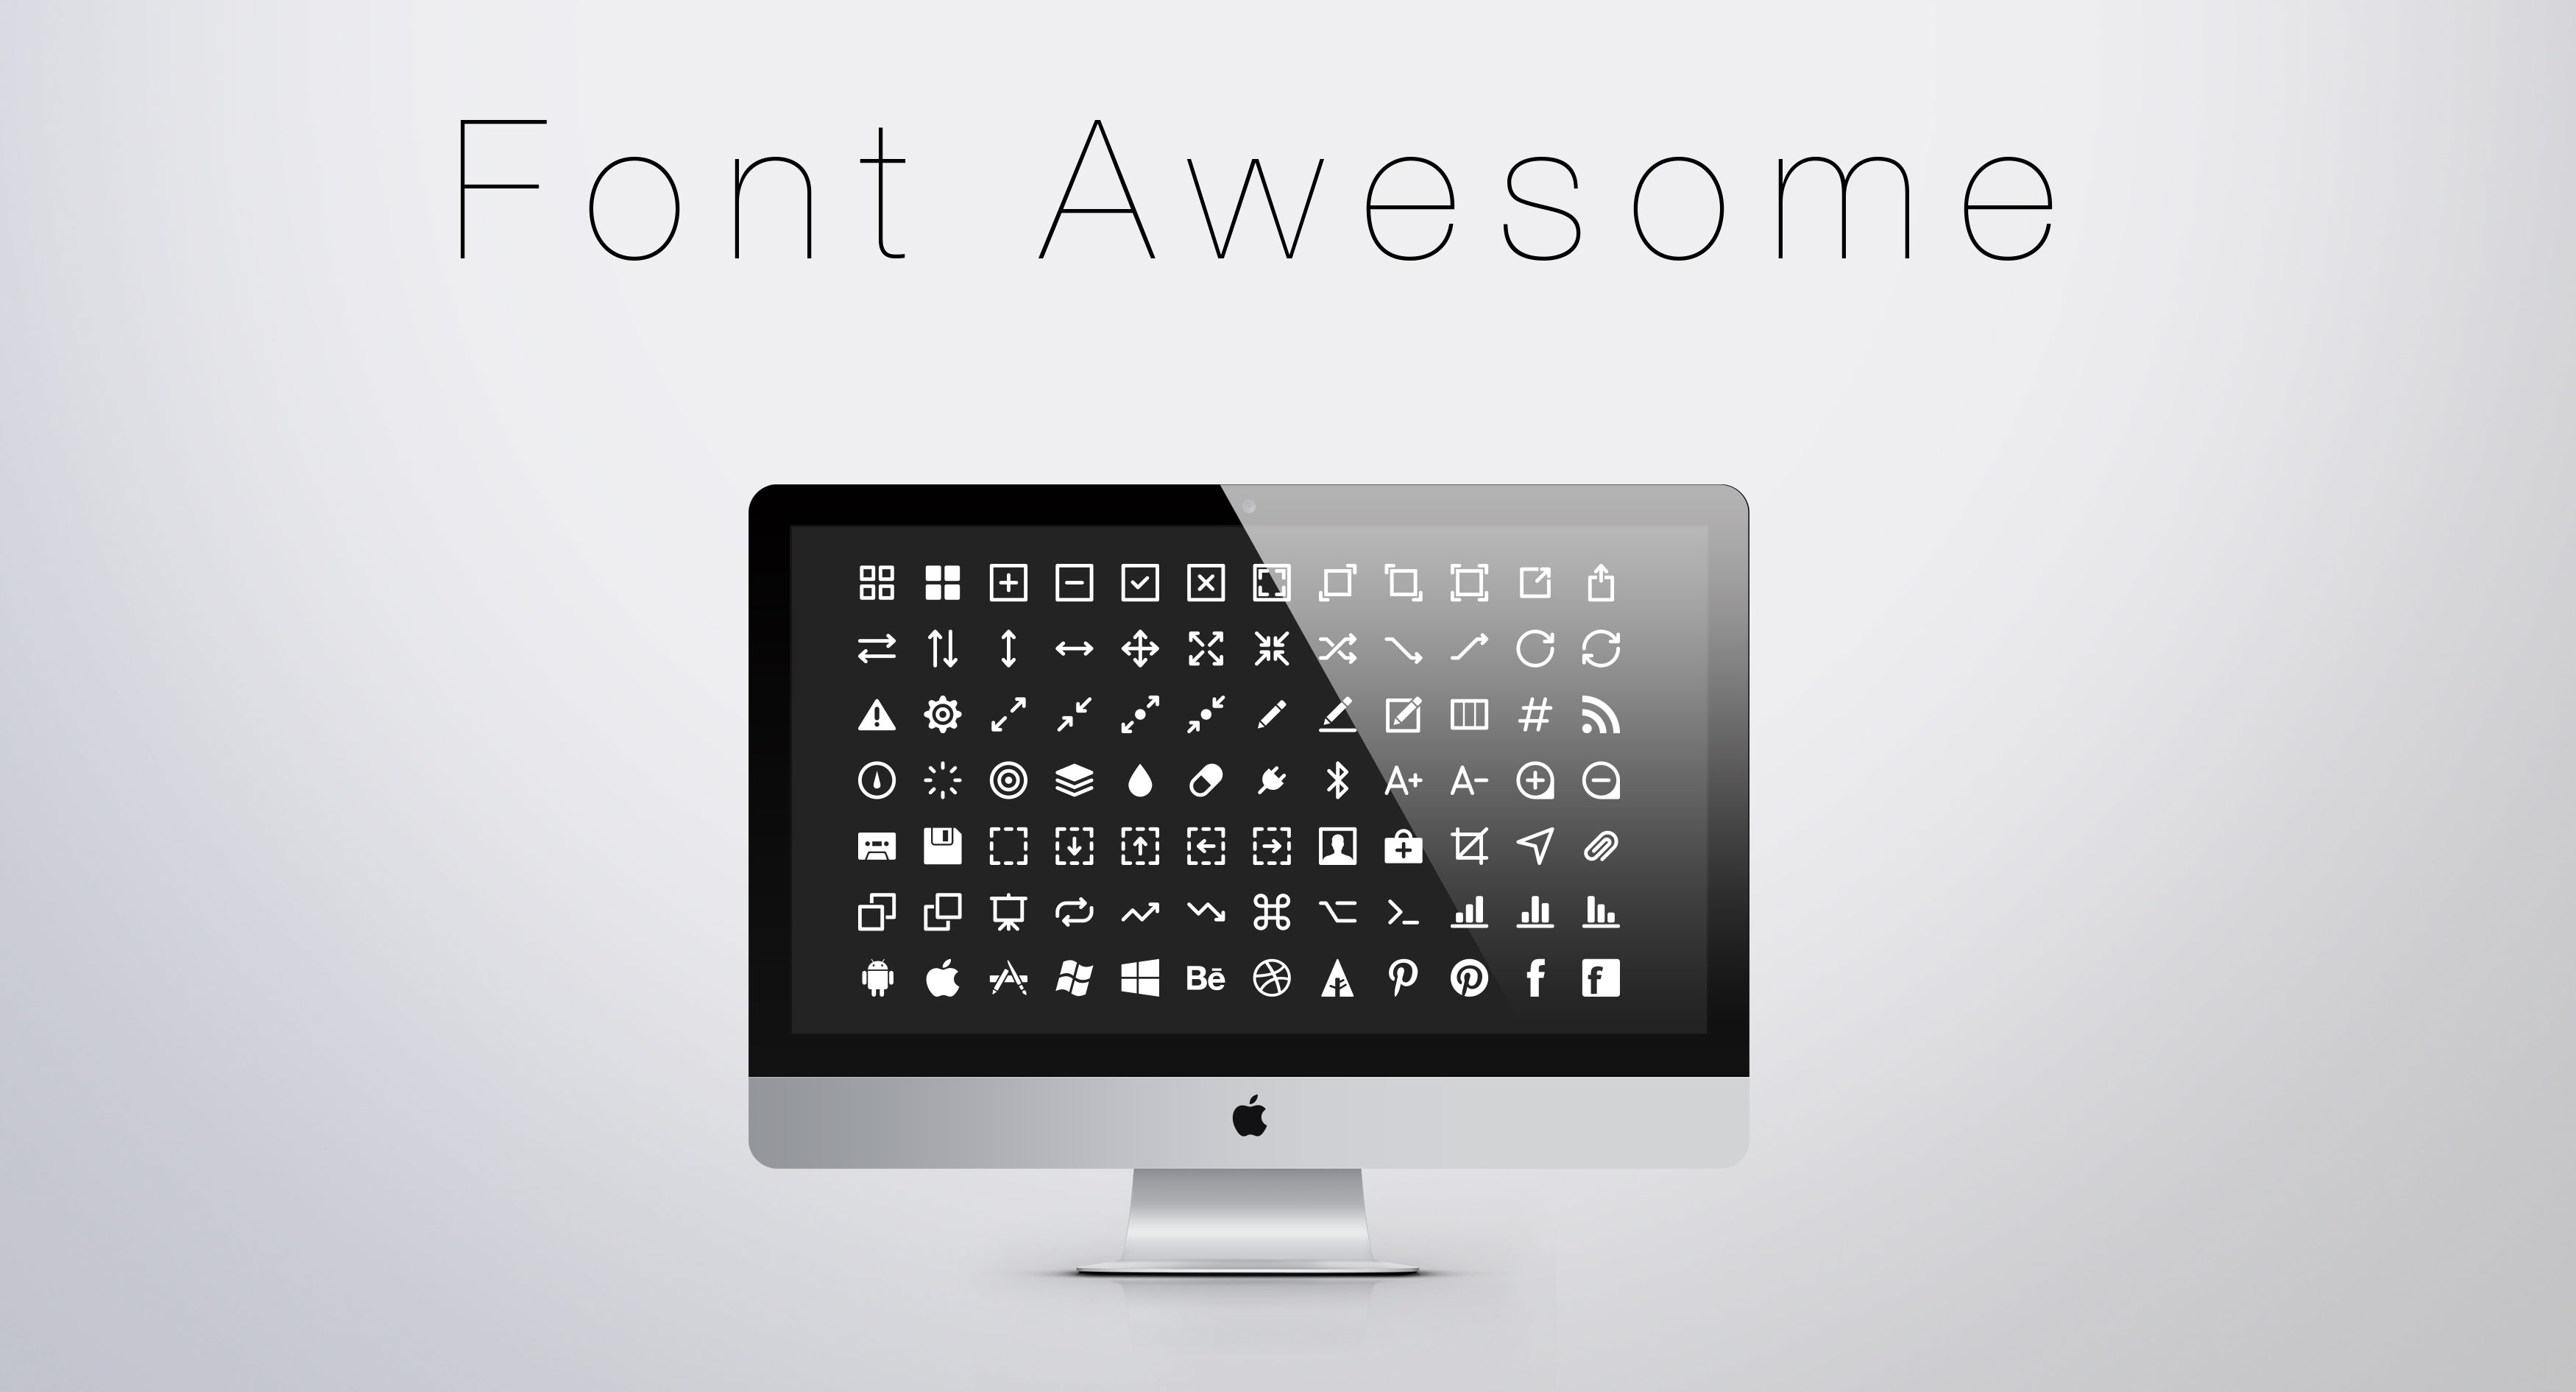 Font Awesomeの使い方